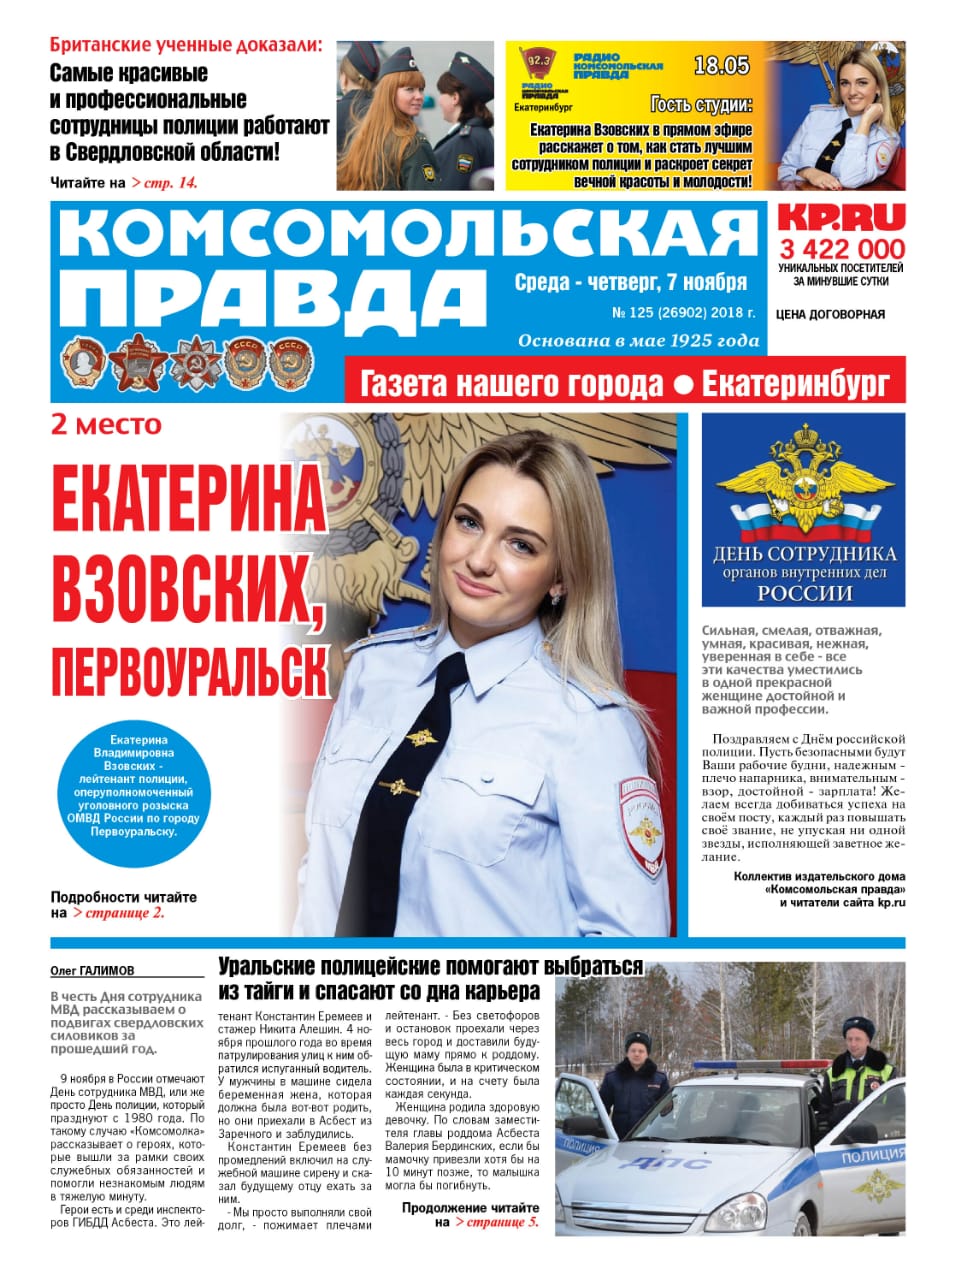 В конкурсе красоты для полицейских сотрудница уголовного розыска Первоуральска стала второй